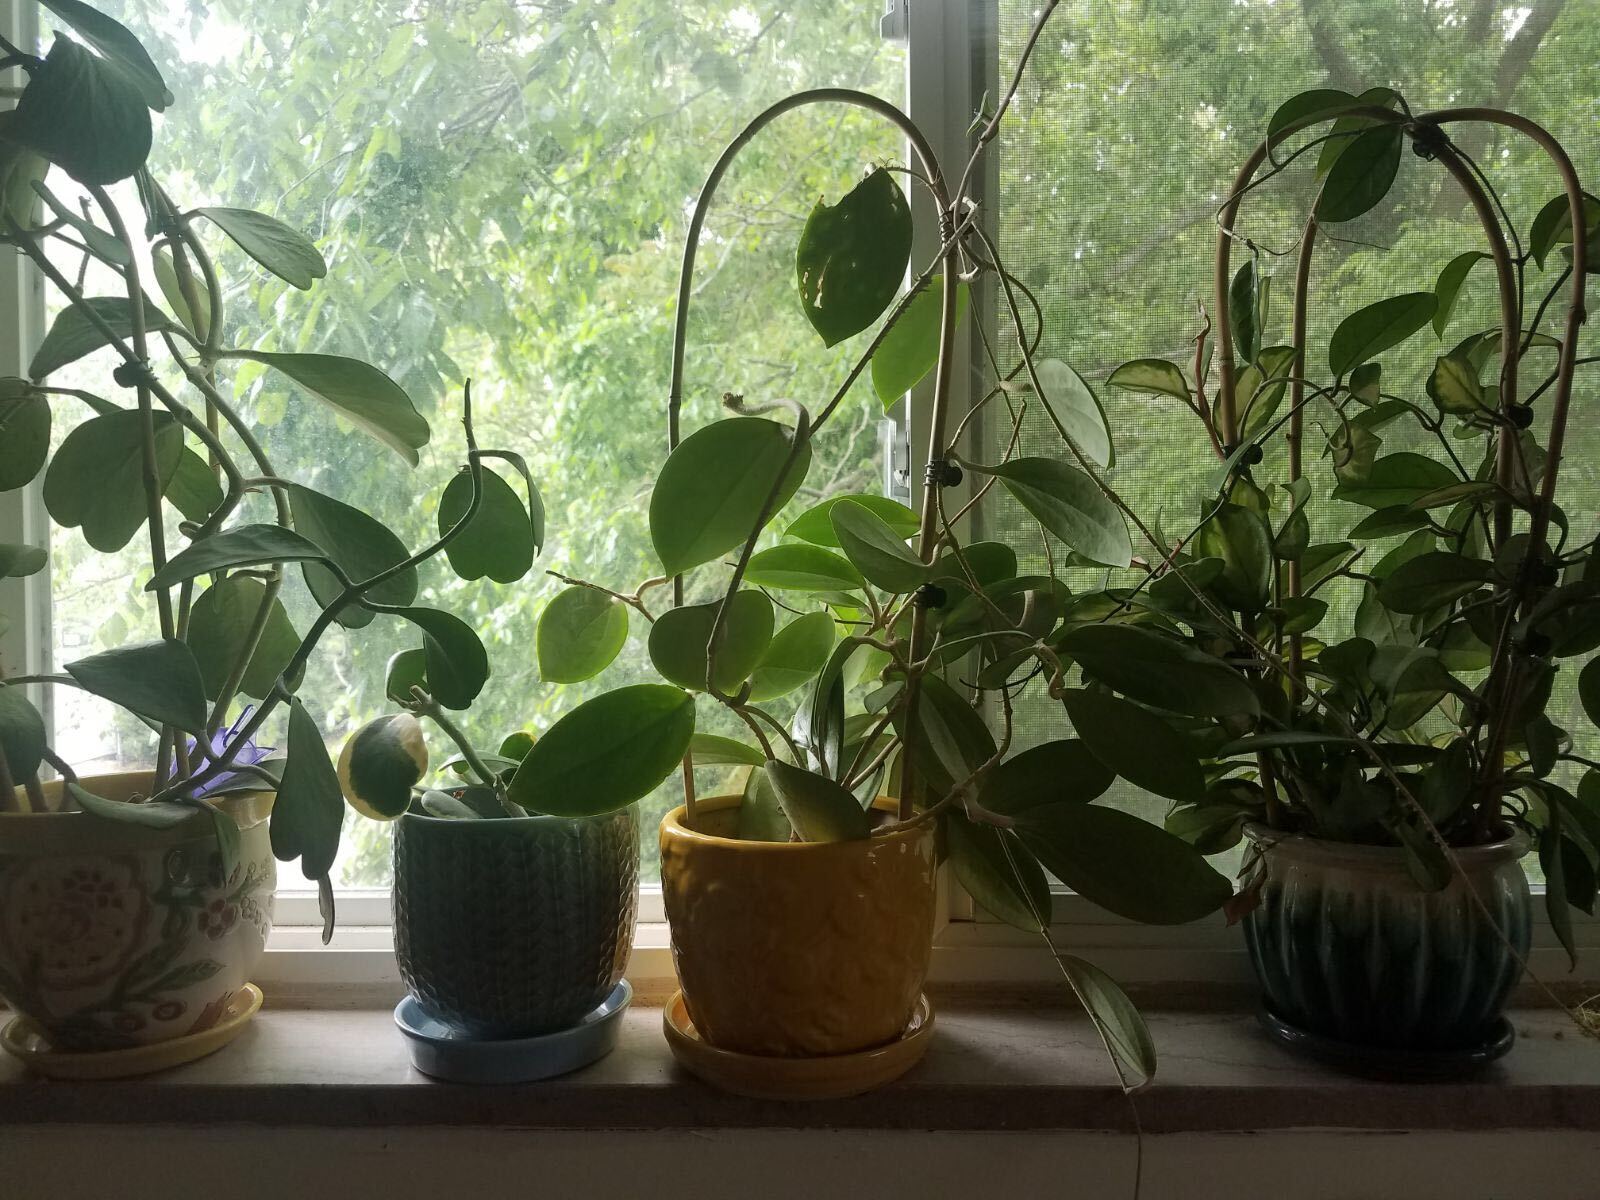 Plants in window